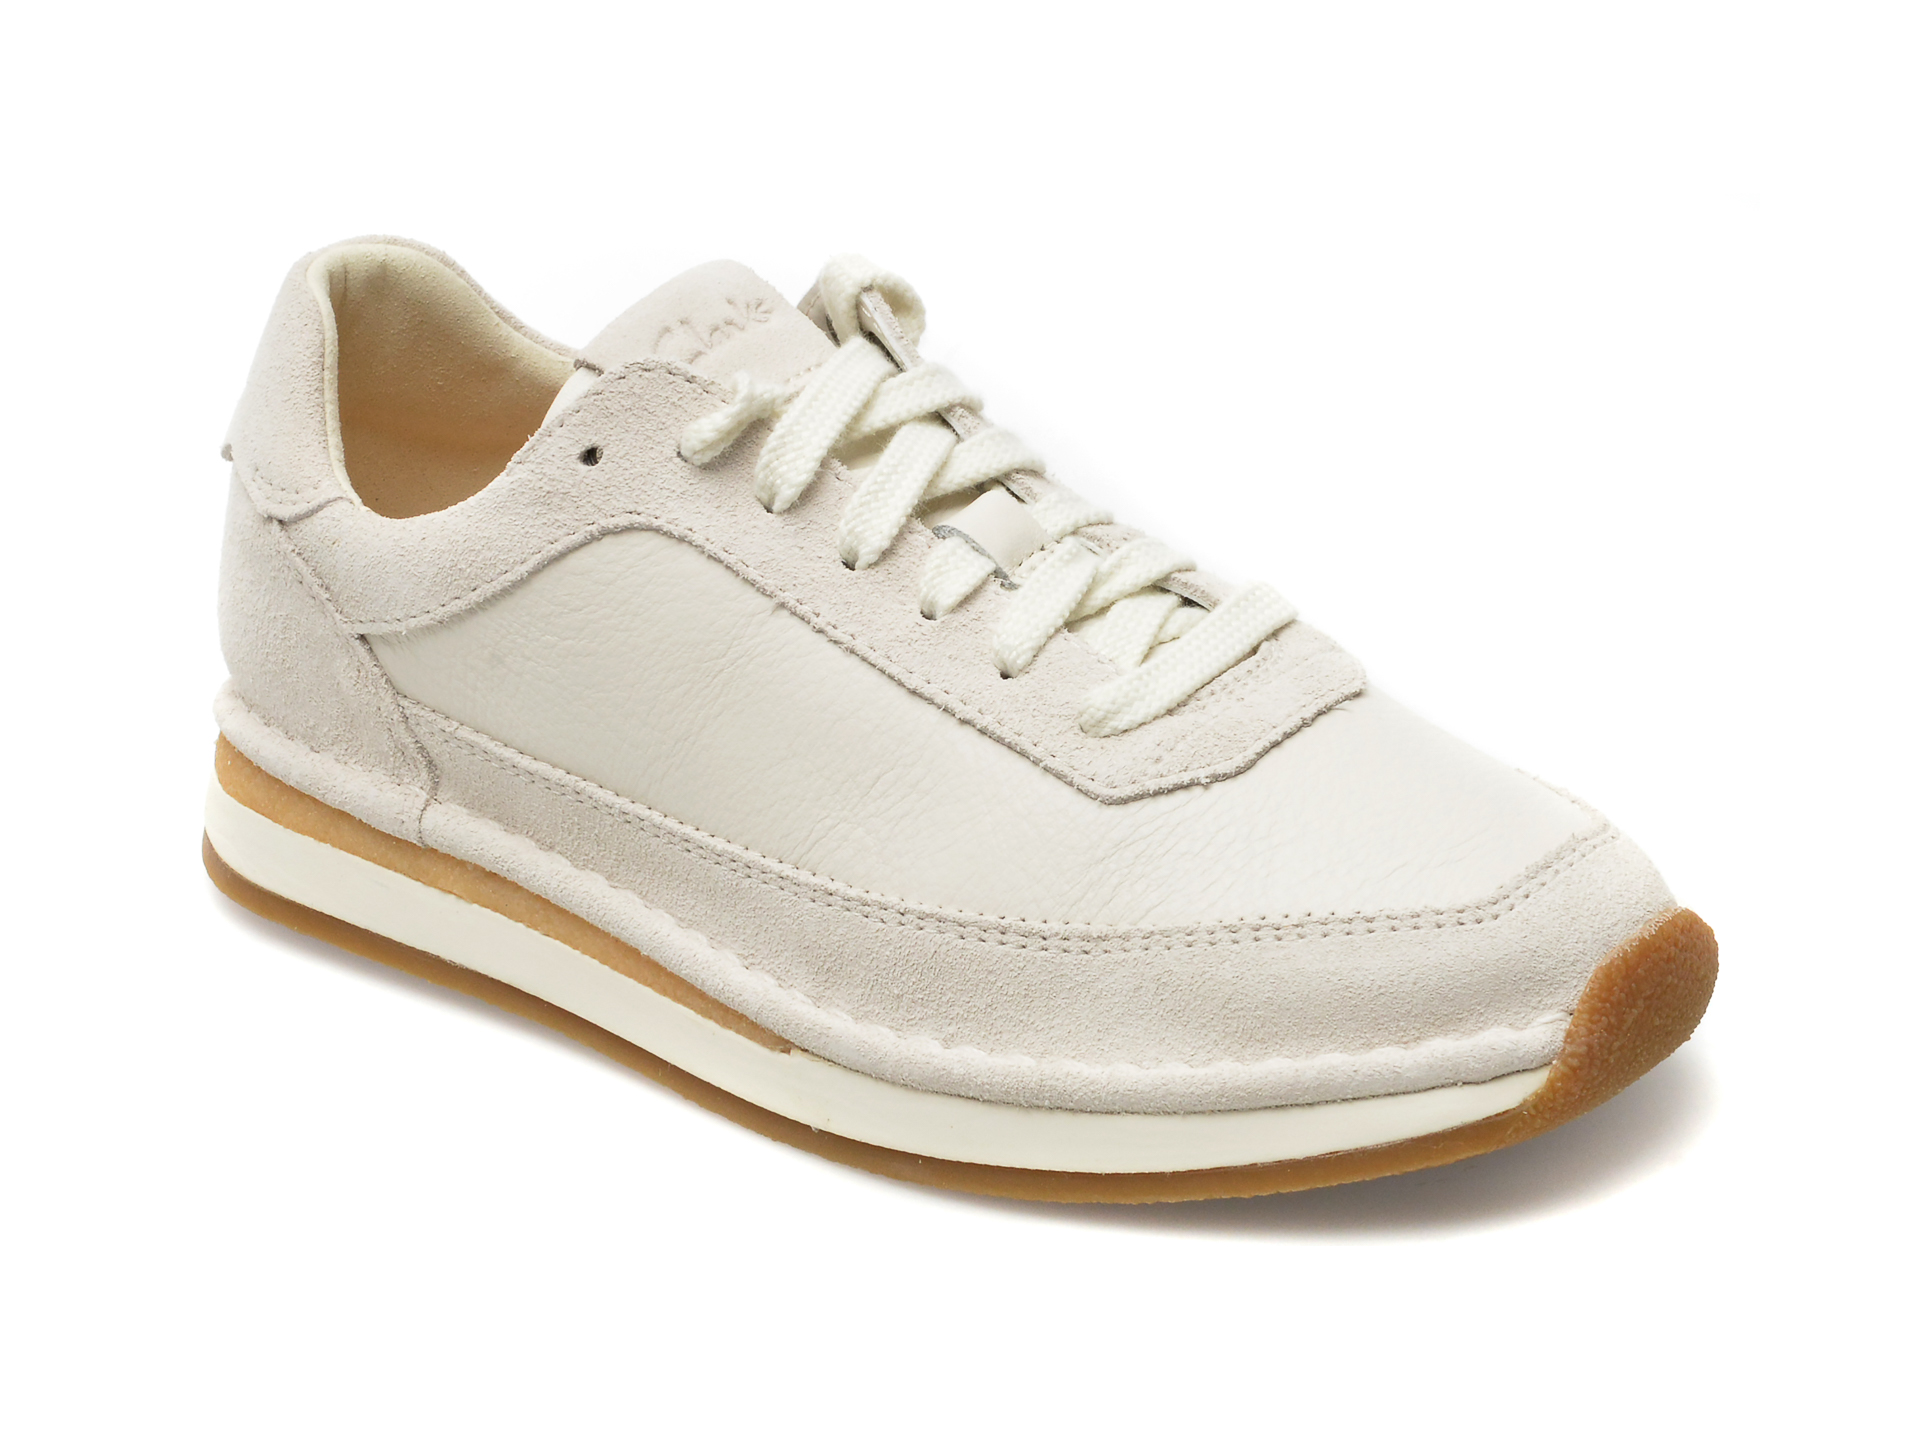 Pantofi CLARKS albi, CRAFTRUN LACE 13-I, din piele intoarsa Answear 2023-09-28